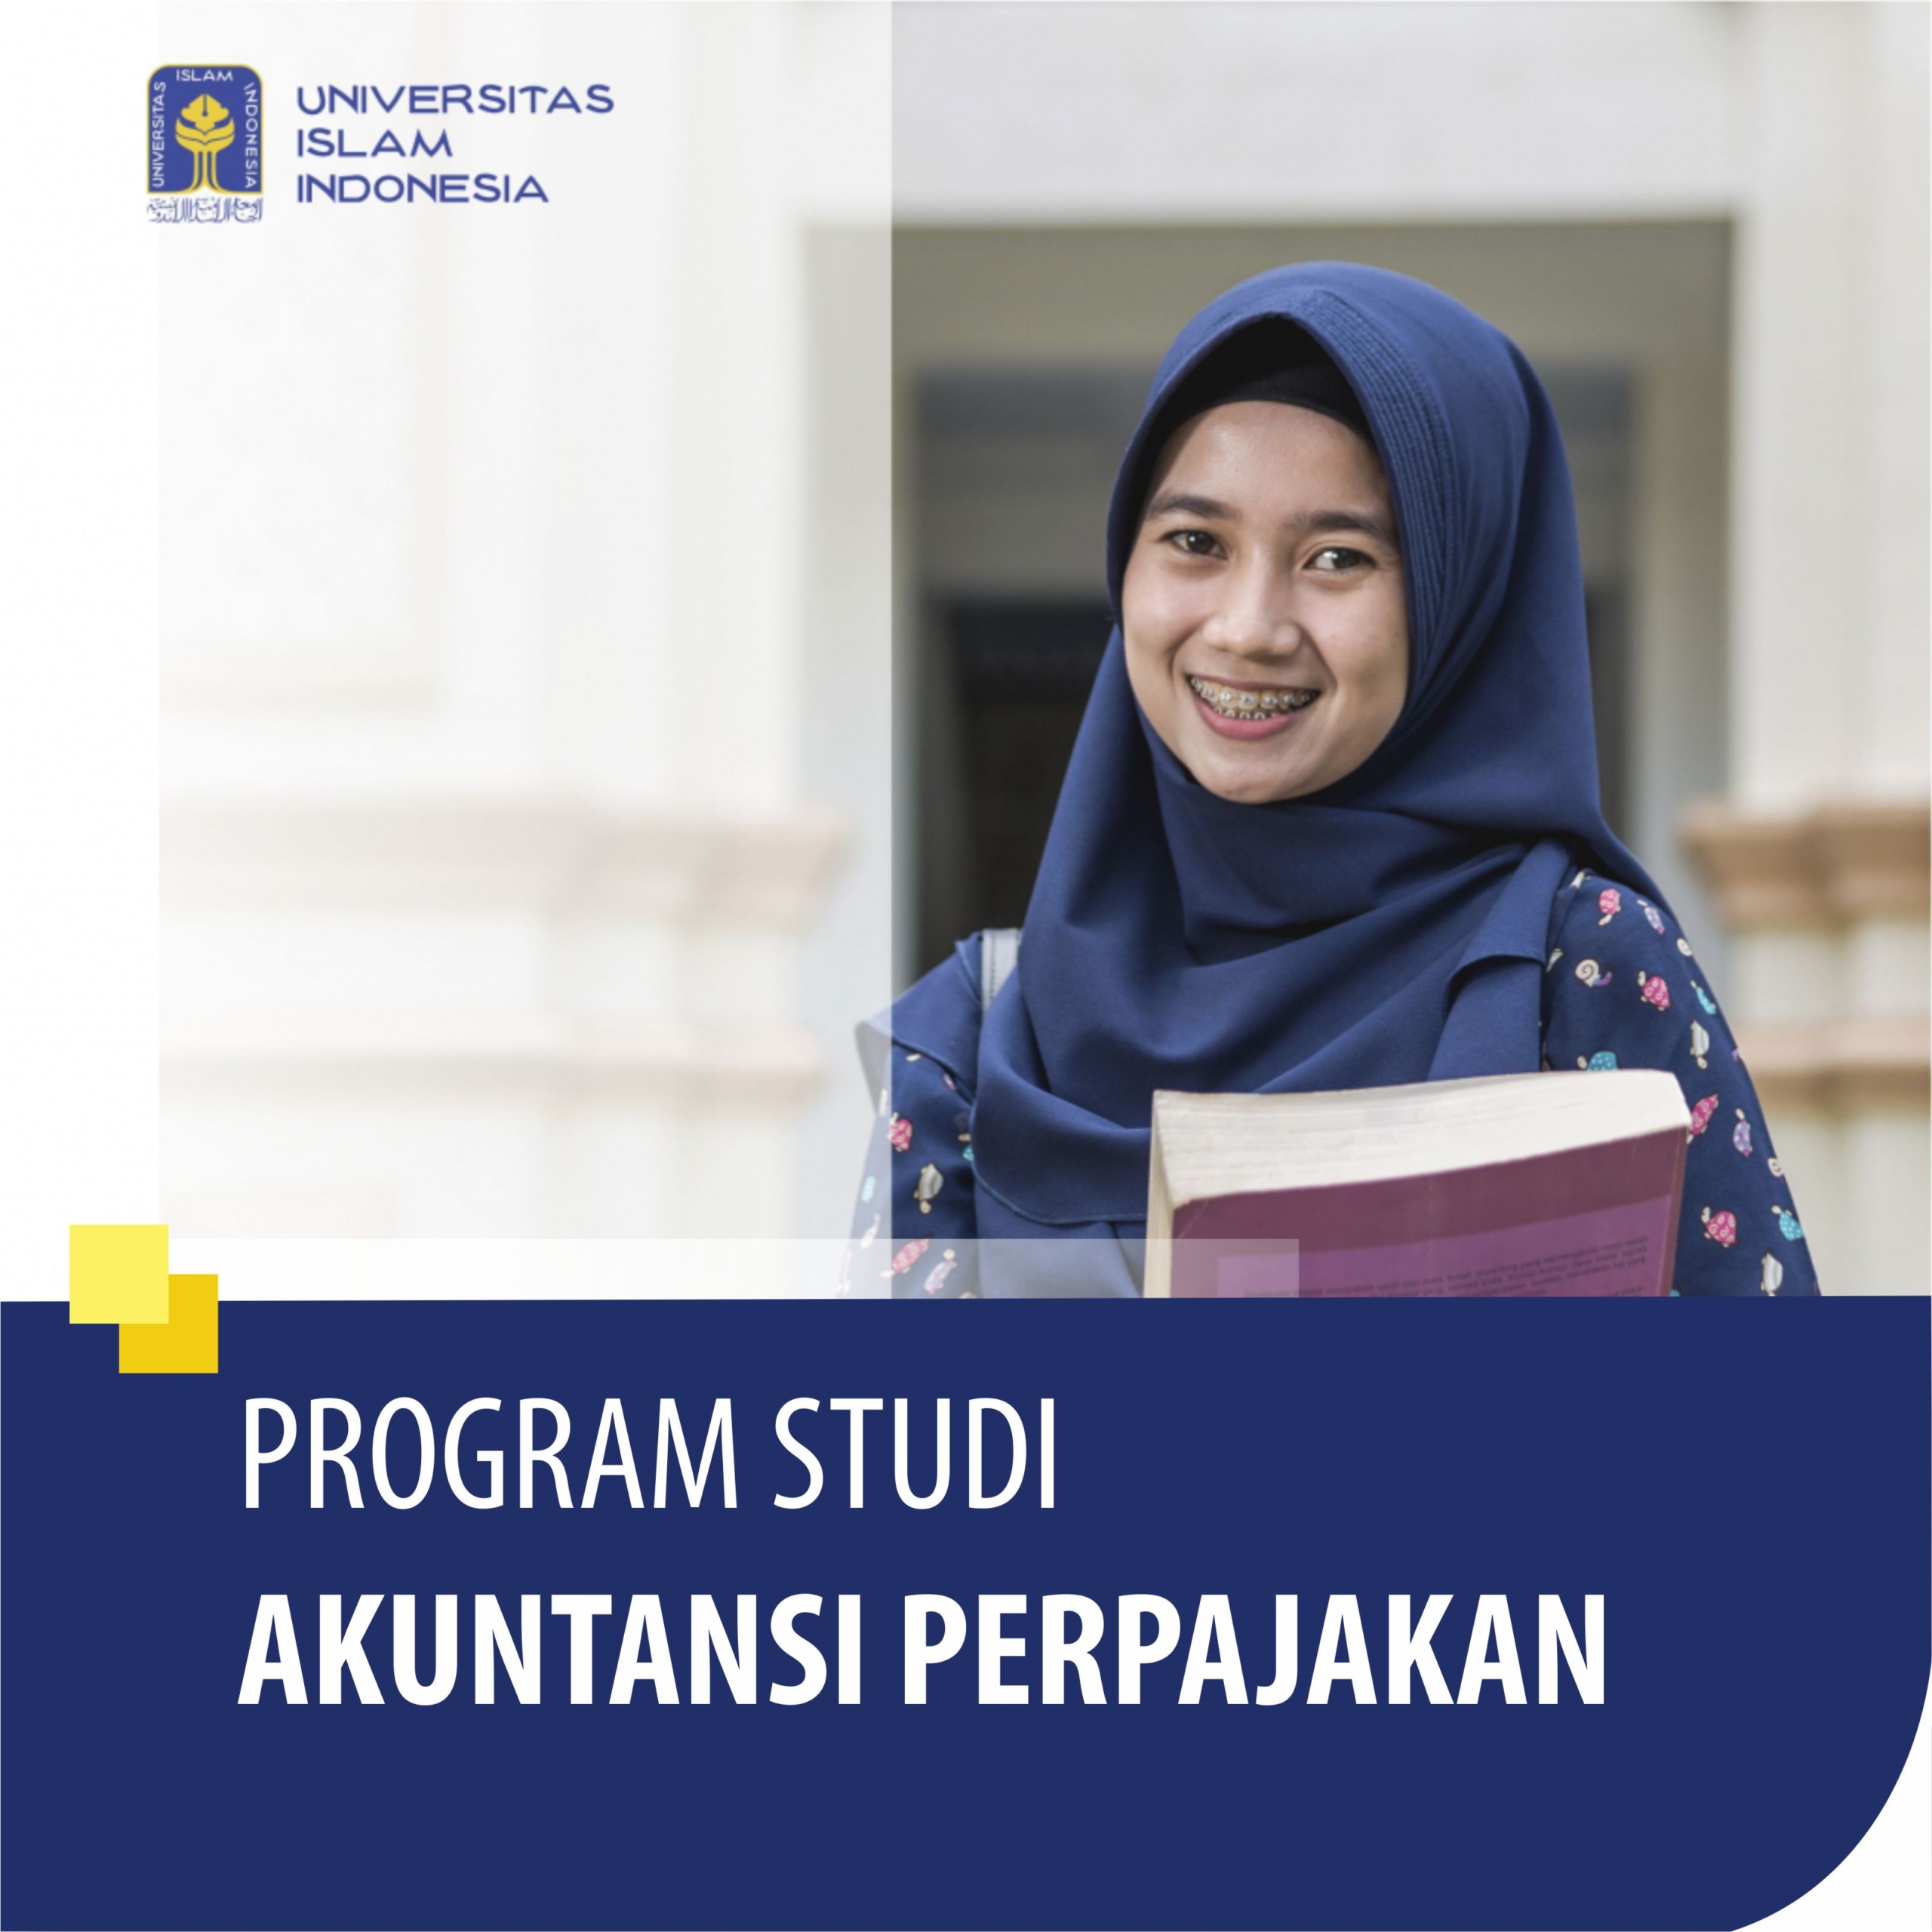 AKUNTANSI PERPAJAKAN - Sarjana Terapan Universitas Islam Indonesia